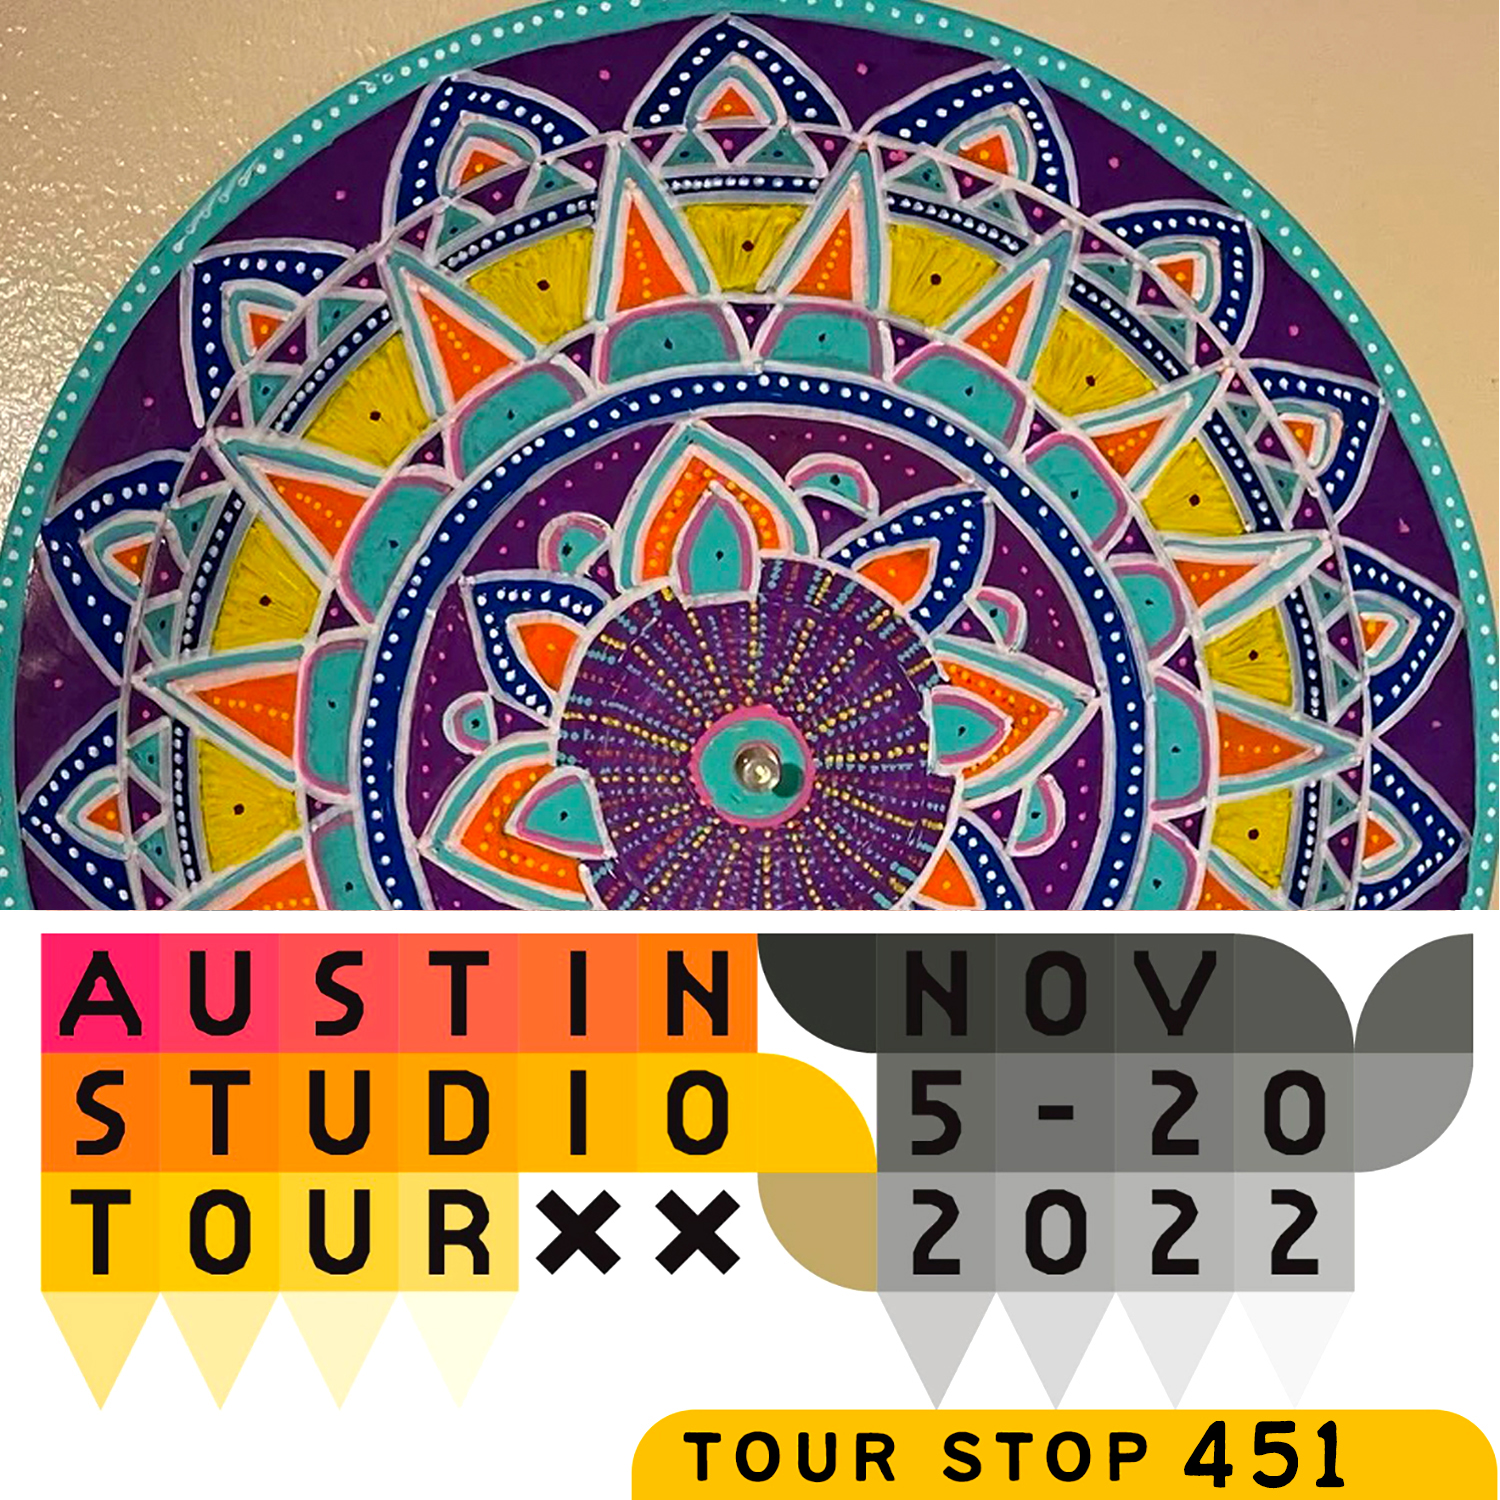 Austin Studio Tour graphic. Text reads, "Austin Studio Tour November 5-20, 2022."